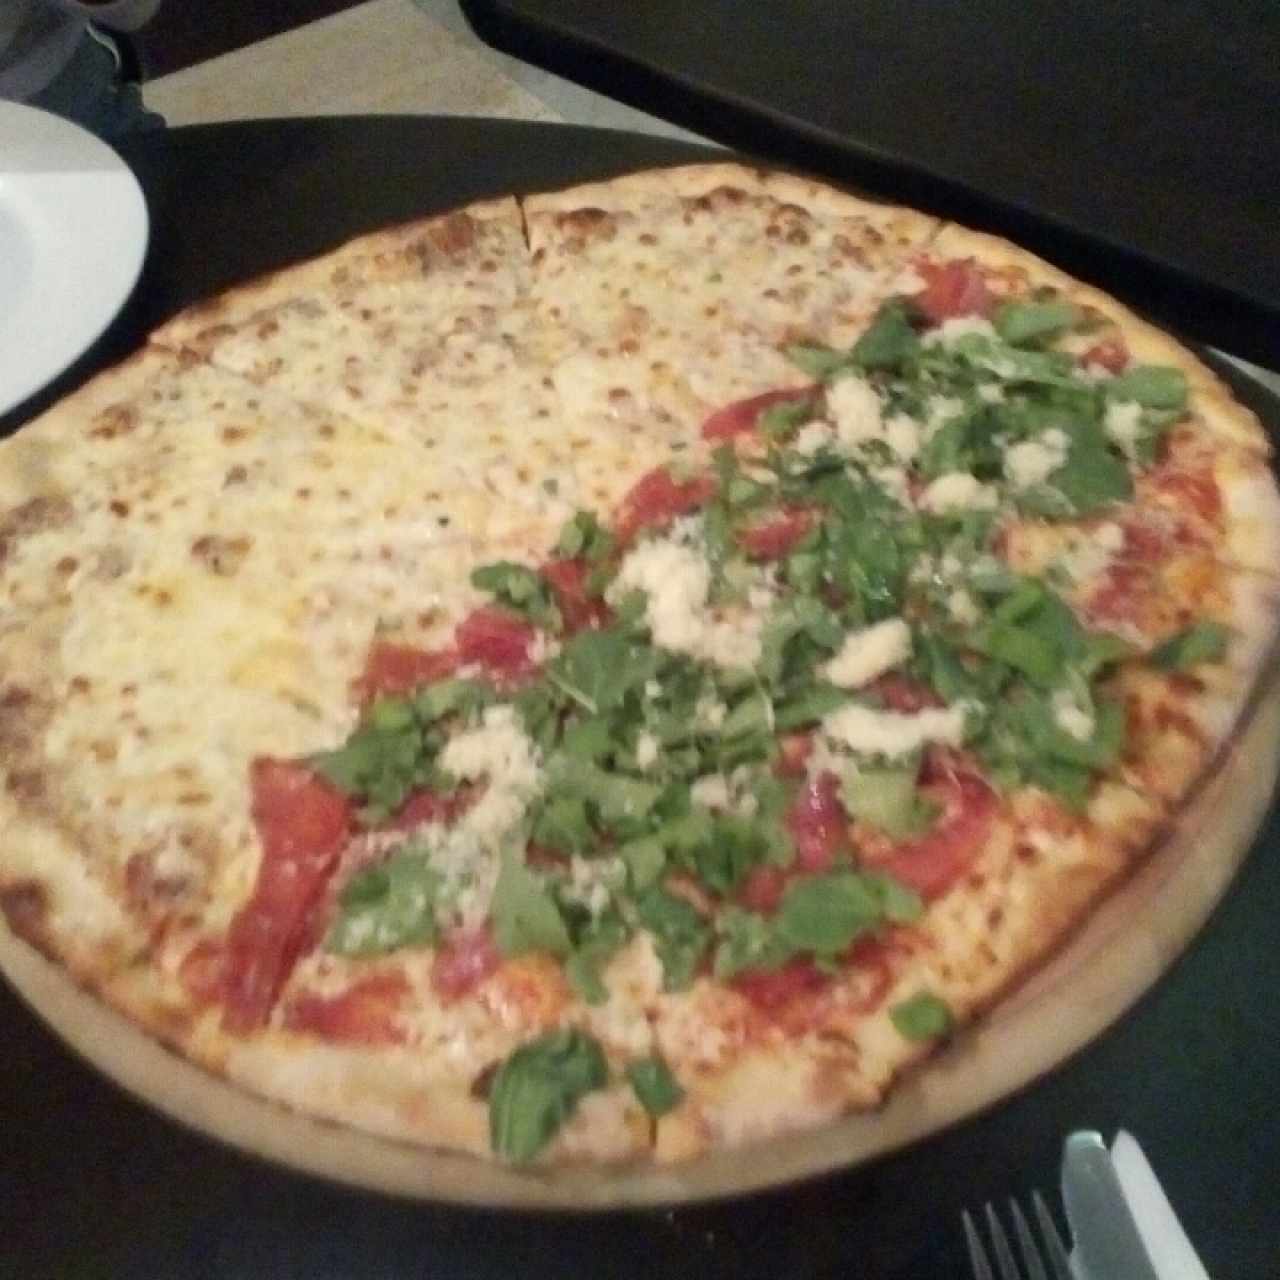 Pizza blanca y pizza proscuitto tamaño familiar 